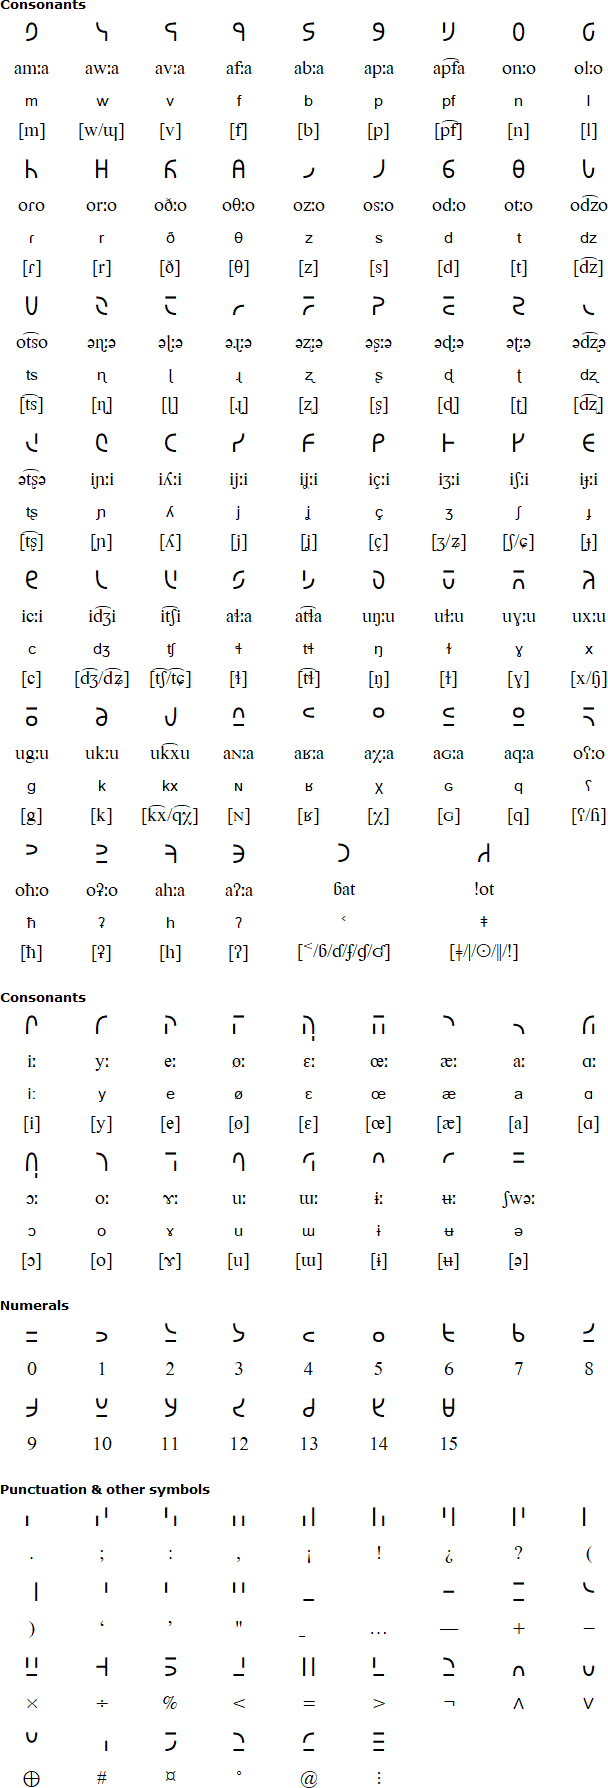 Ukaliq consonants